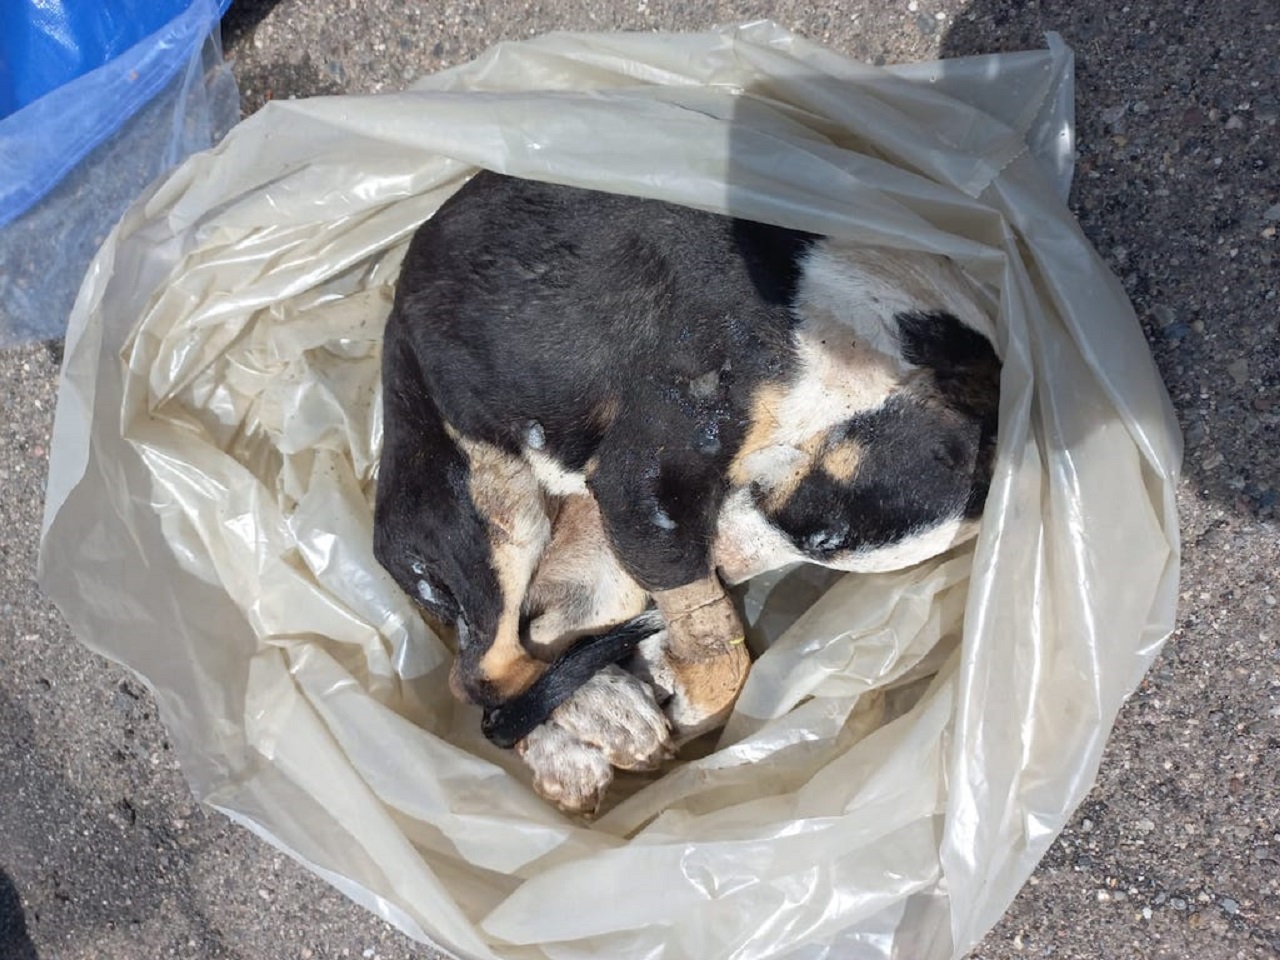 Canile lager a Giarre, trovati 11 cuccioli congelati